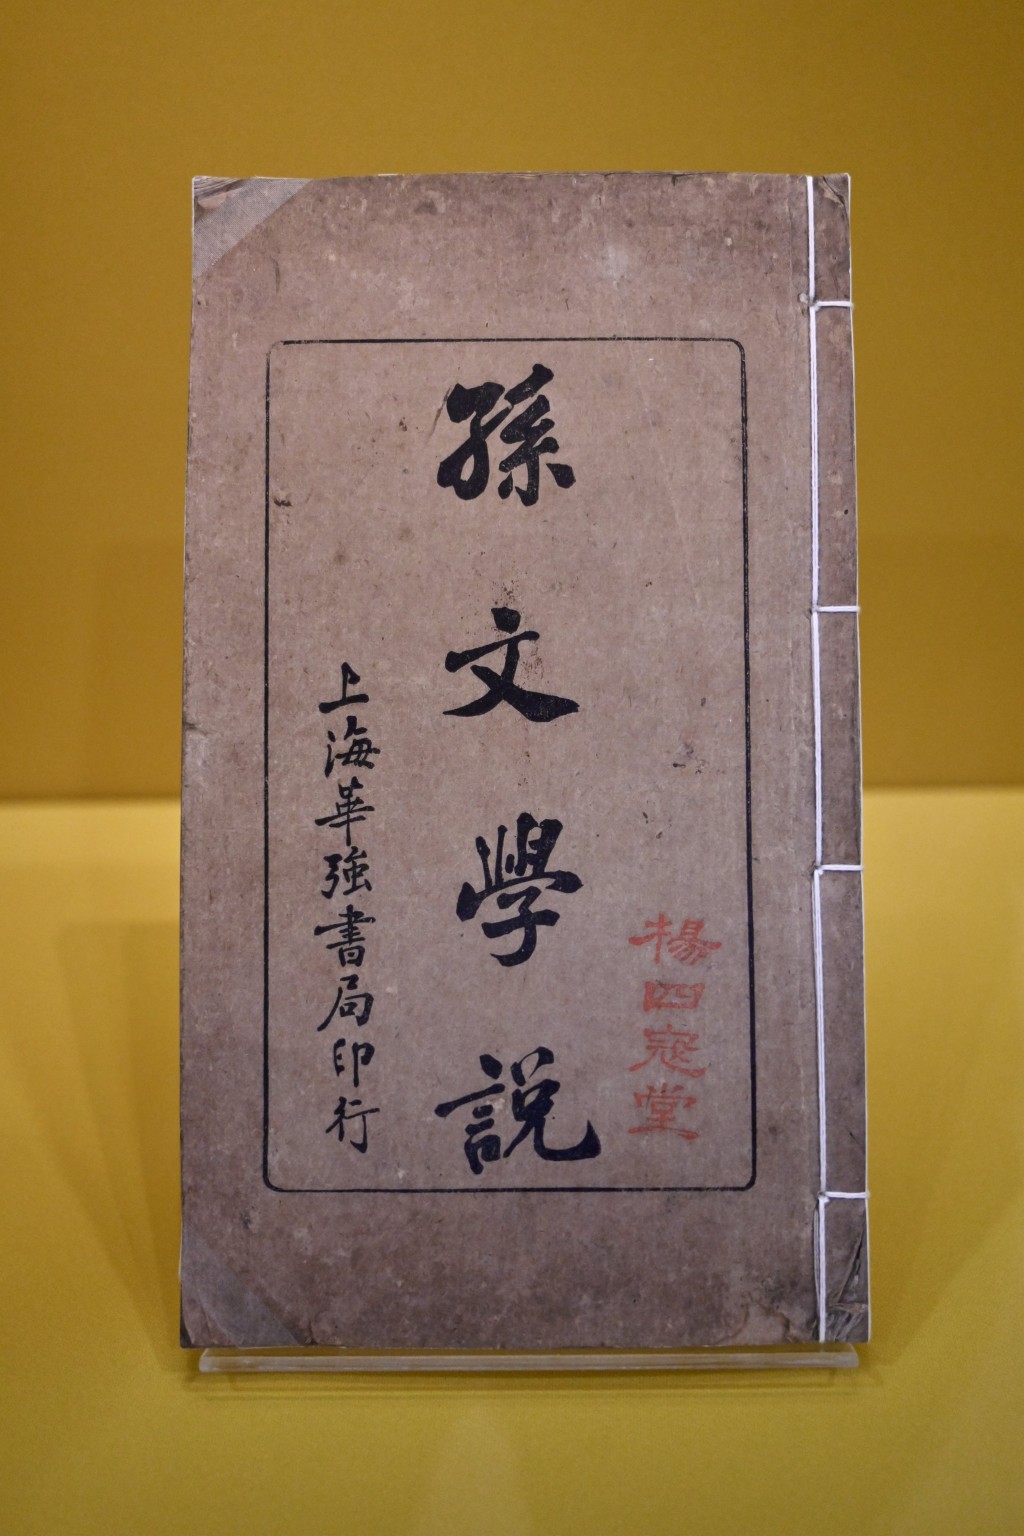 重點展品包括1919年刊行、封面鈐印「楊四寇堂」的《孫文學說》（複製品）及楊鶴齡手書「天下為公」橫幅（複製品）等。